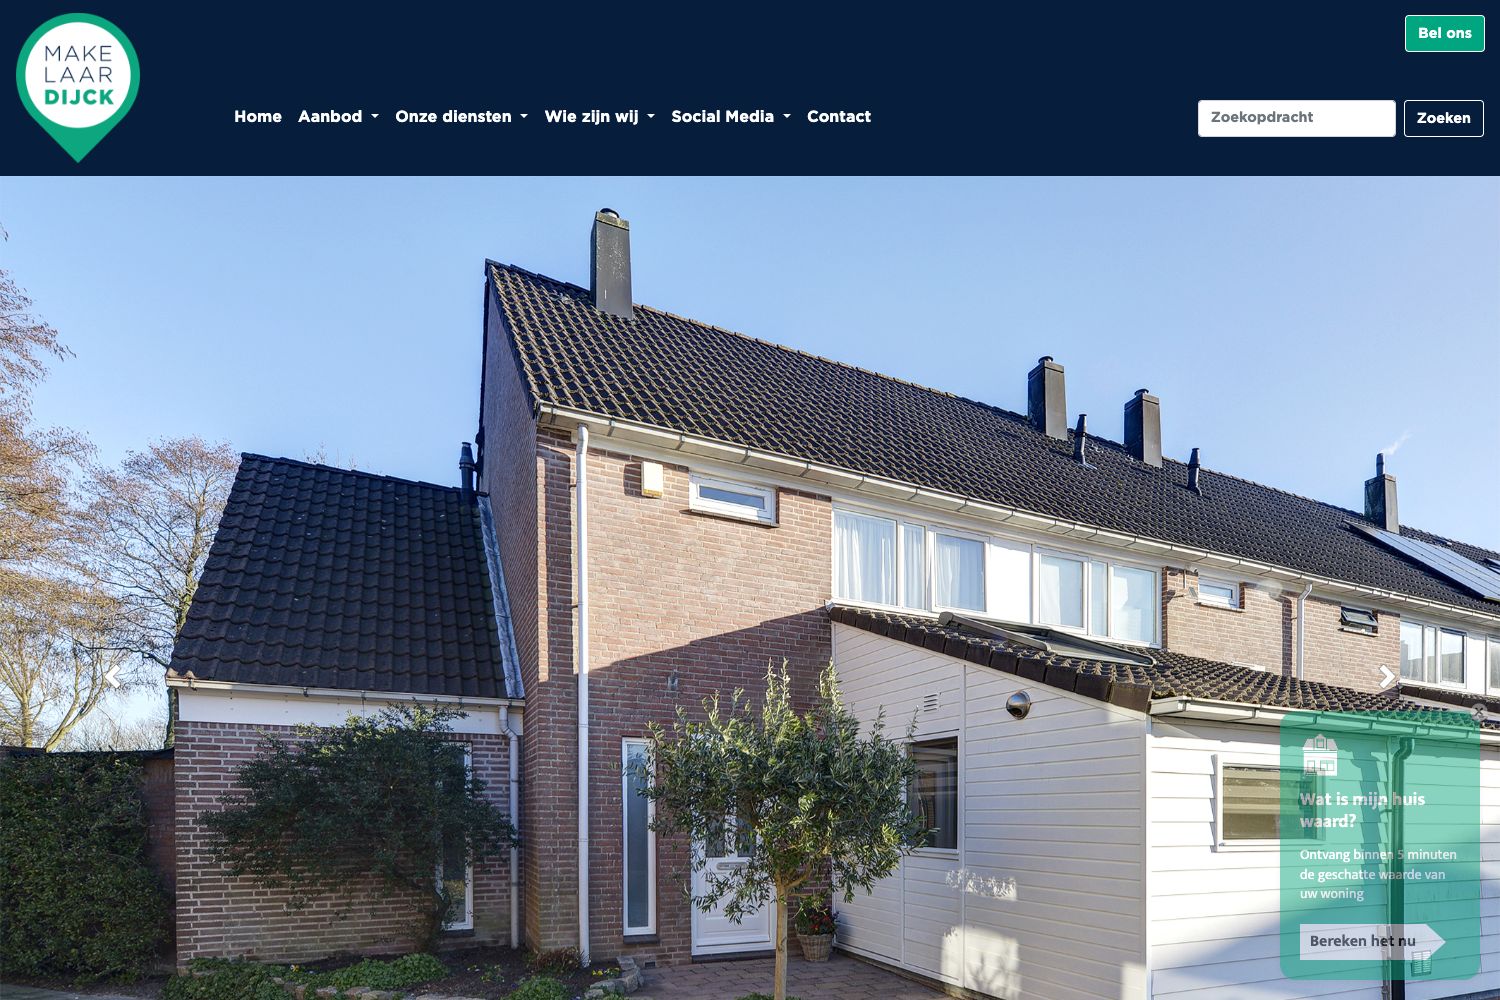 Website screenshot https://www.makelaardijck.nl